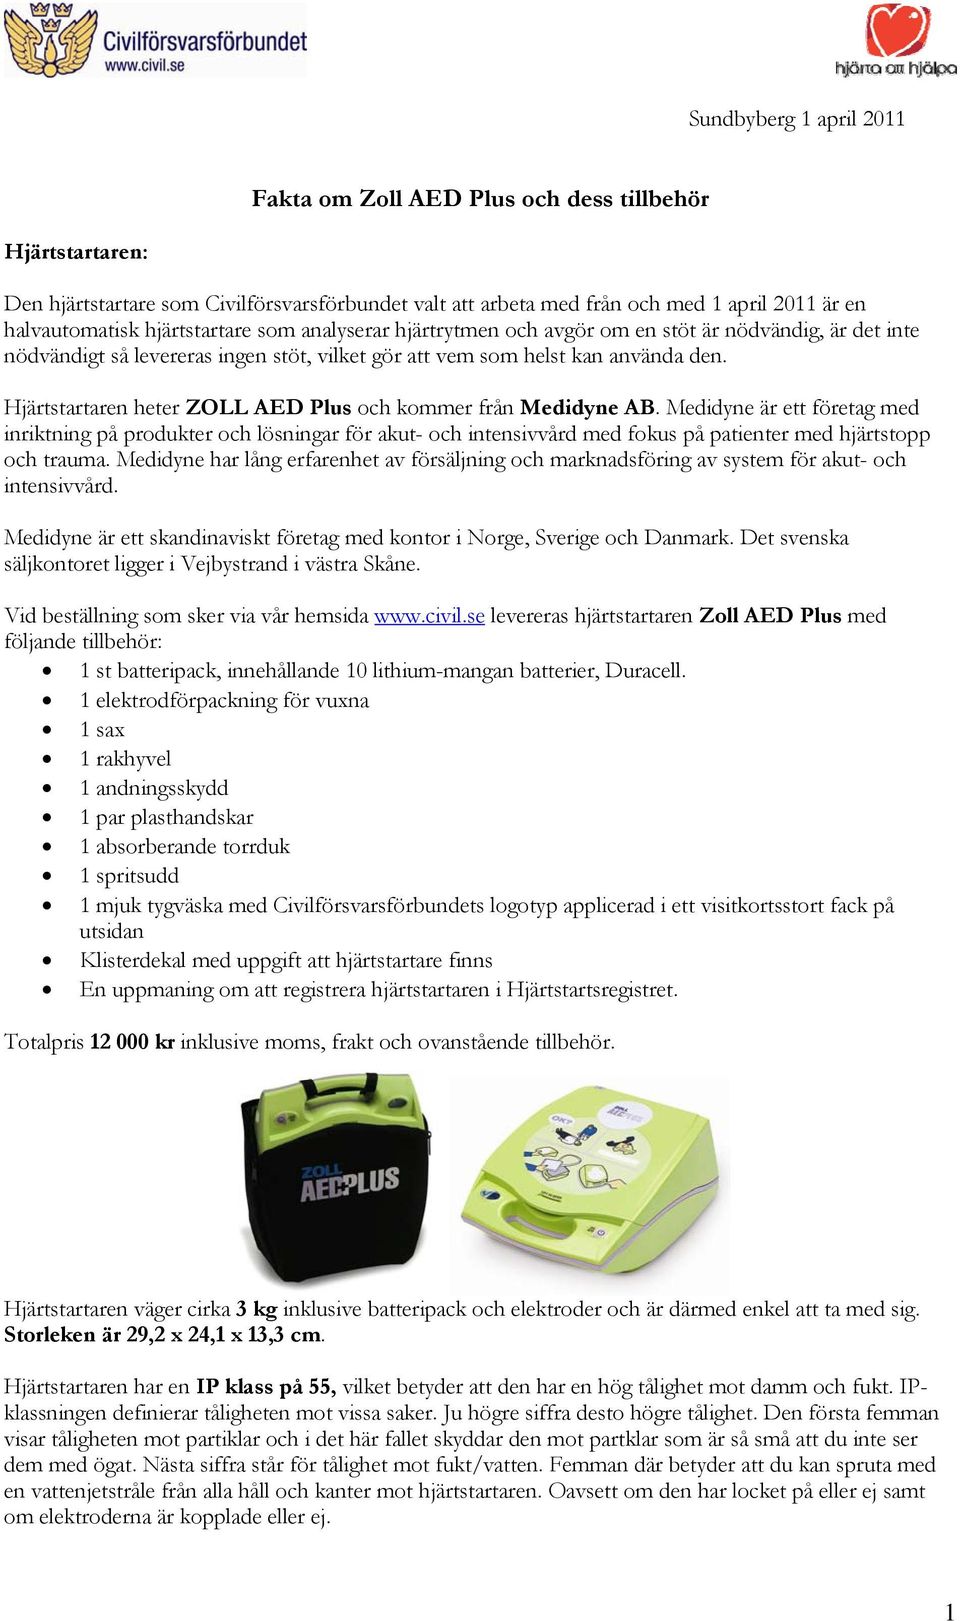 Hjärtstartaren heter ZOLL AED Plus och kommer från Medidyne AB.